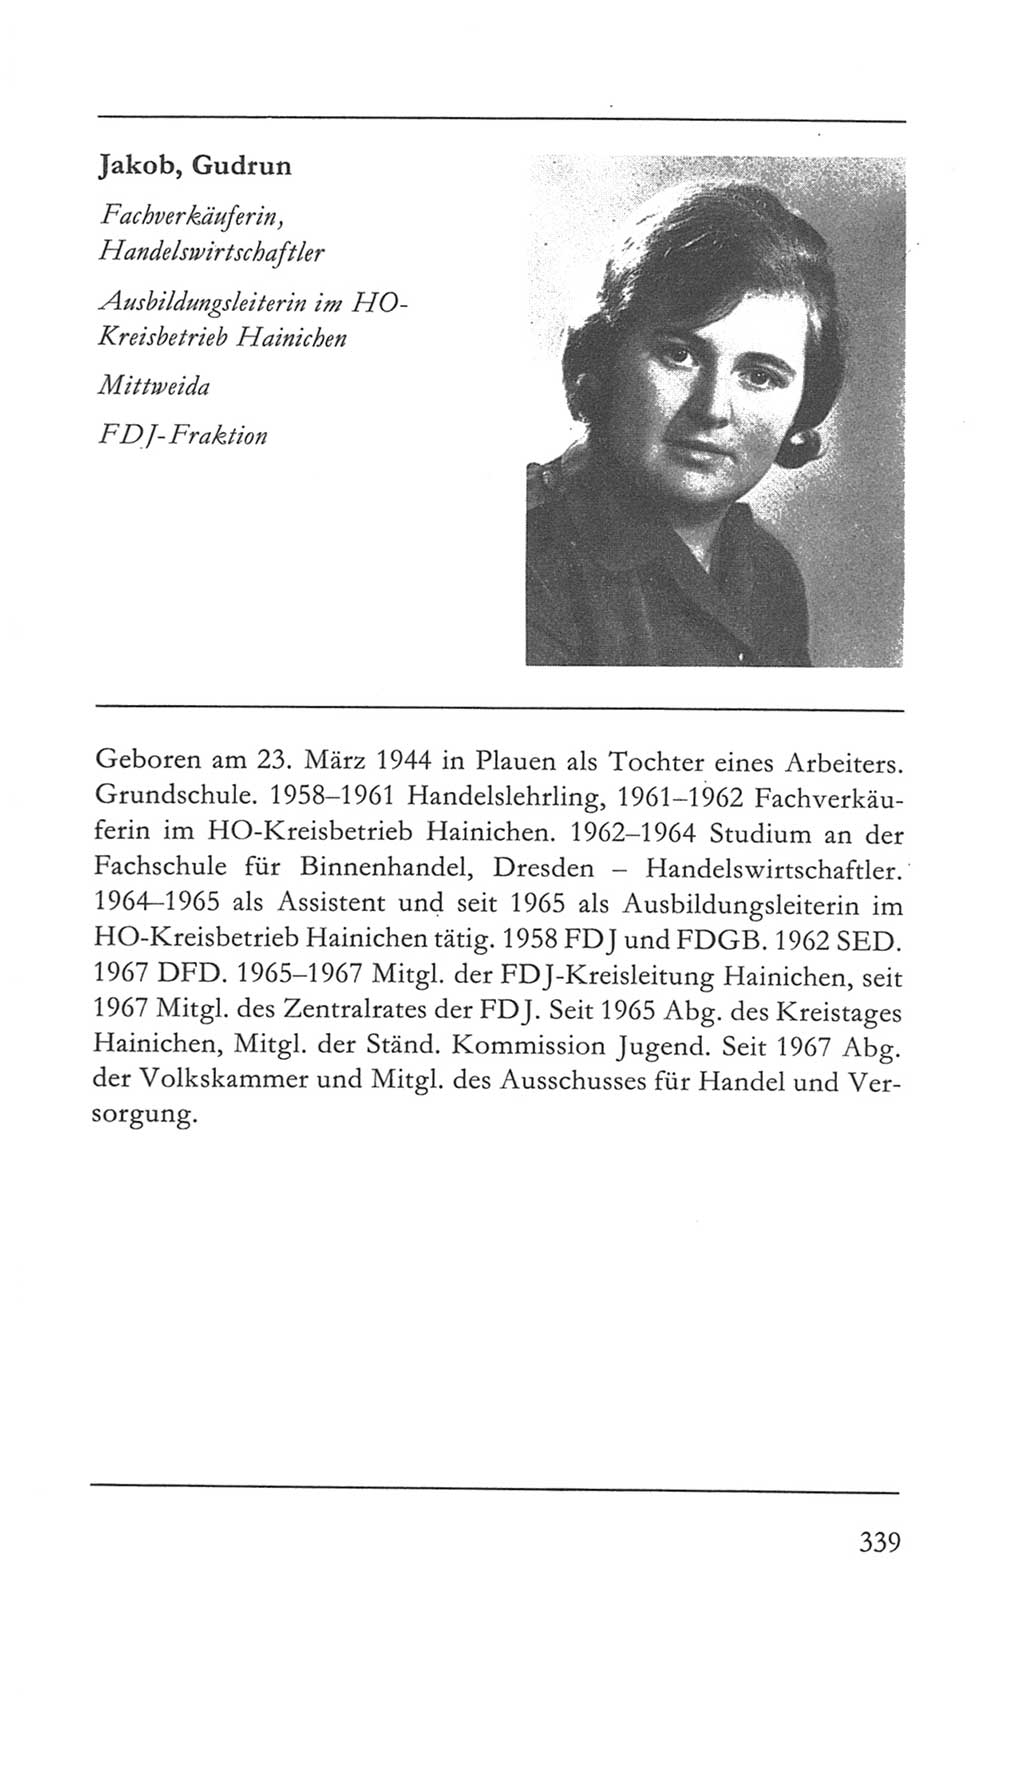 Volkskammer (VK) der Deutschen Demokratischen Republik (DDR) 5. Wahlperiode 1967-1971, Seite 339 (VK. DDR 5. WP. 1967-1971, S. 339)